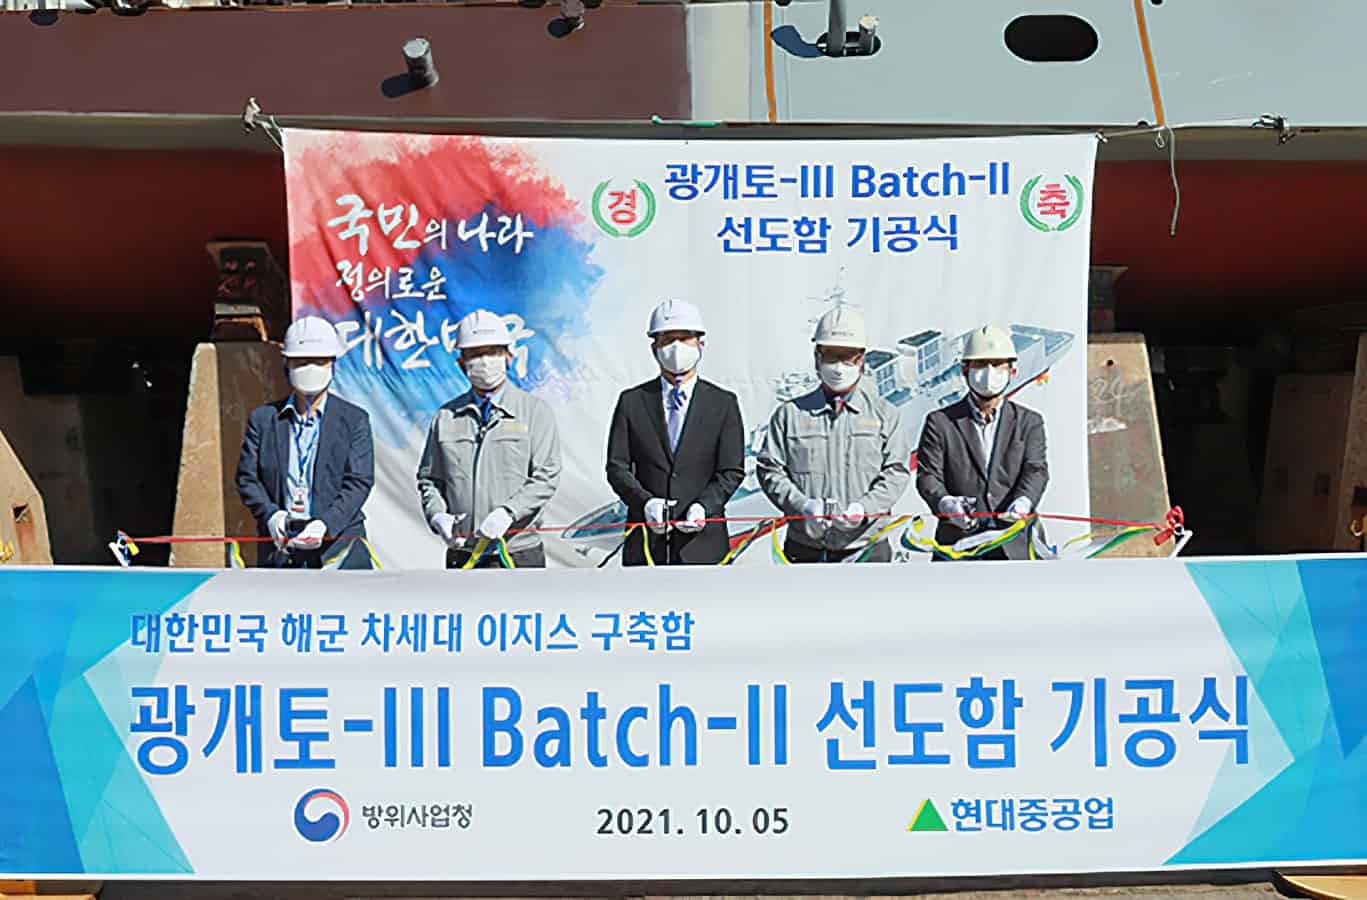 Фото з церемонії закладання кіля КDX-III другої серії (Batch-II) від Hyundai Heavy Industries. Жовтень 2021